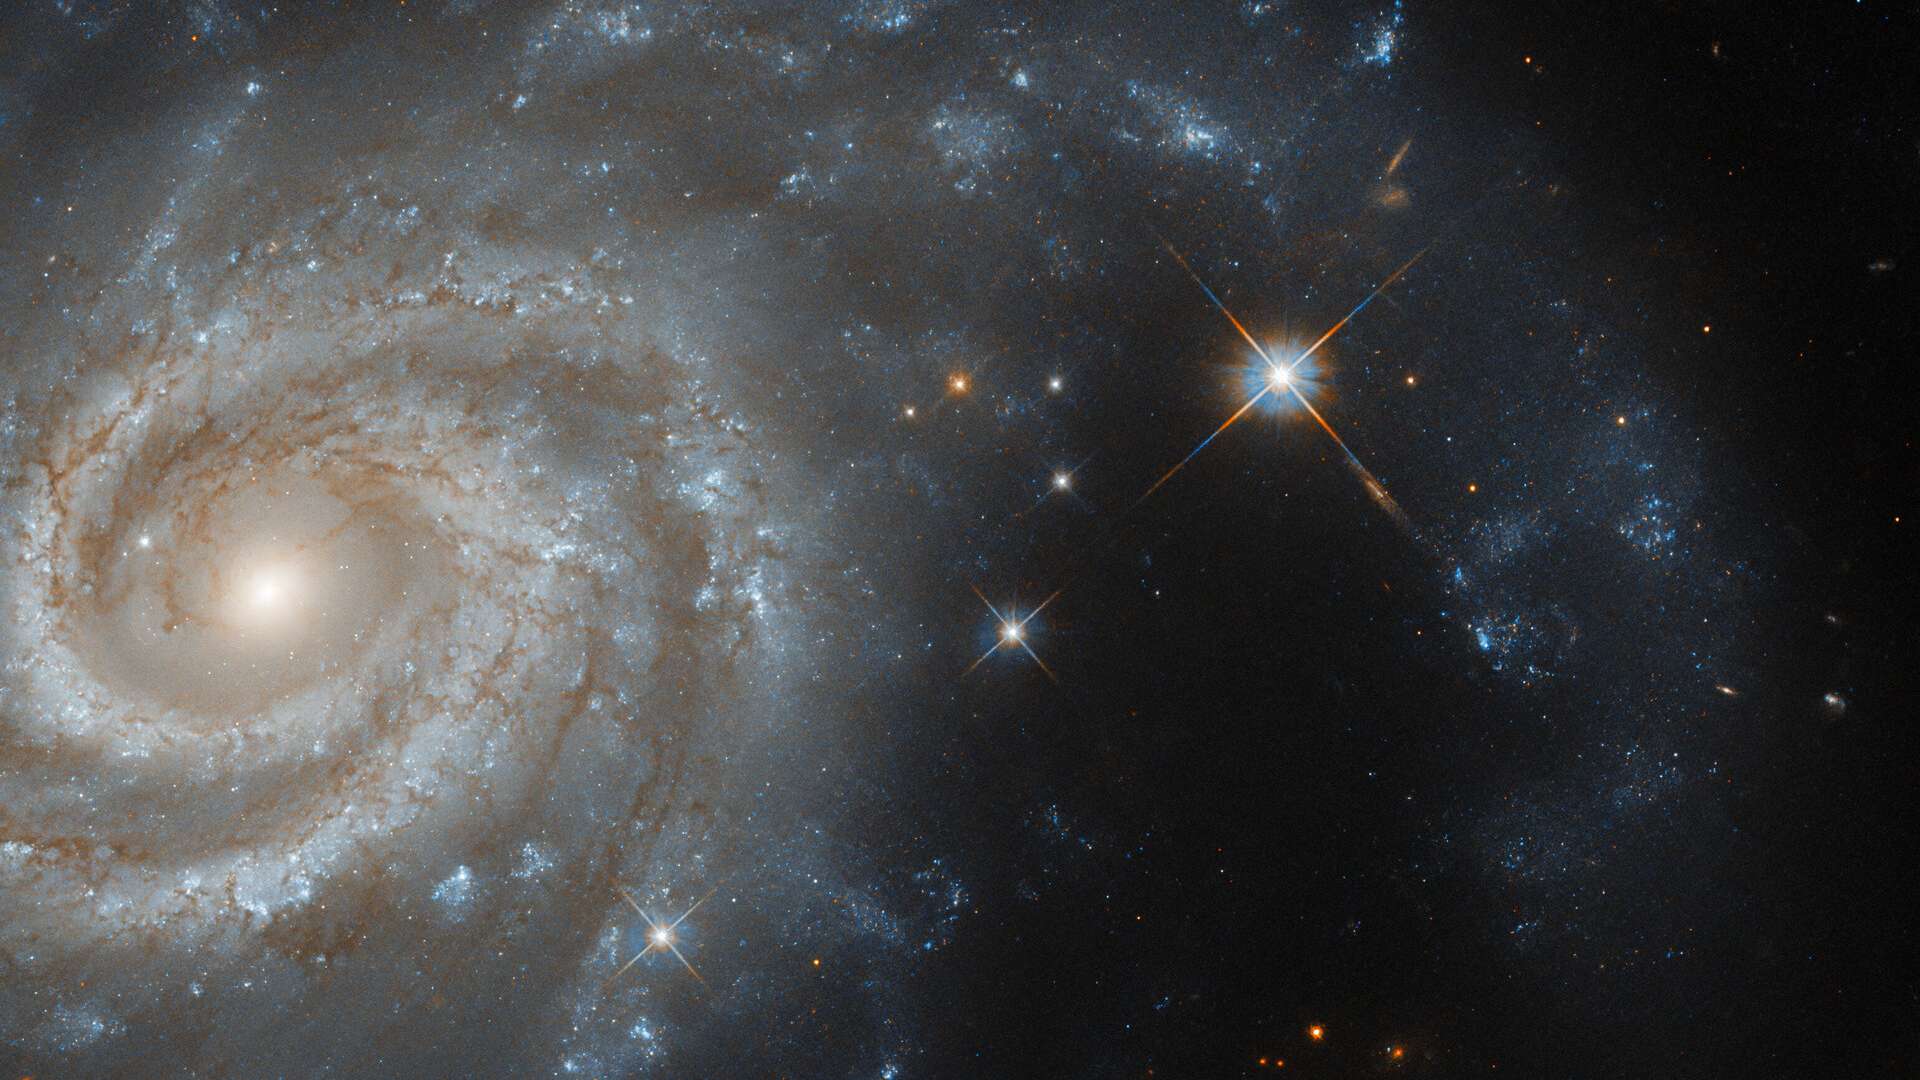 Esta imagem mostra a galáxia espiral IC 438, que fica a cerca de 130 milhões de anos-luz da Terra, na direção da Constelação de Lepus (“A Lebre”). Esse conjunto estelar é margeado pela Constelação do Cão Maior, pela Constelação de Órion e pela Constelação do Cão Menor. Isso faz com que, nas representações artísticas do céu, a lebre estelar seja representada como se estivesse sendo perseguida por Órion e seus dois cães de caça